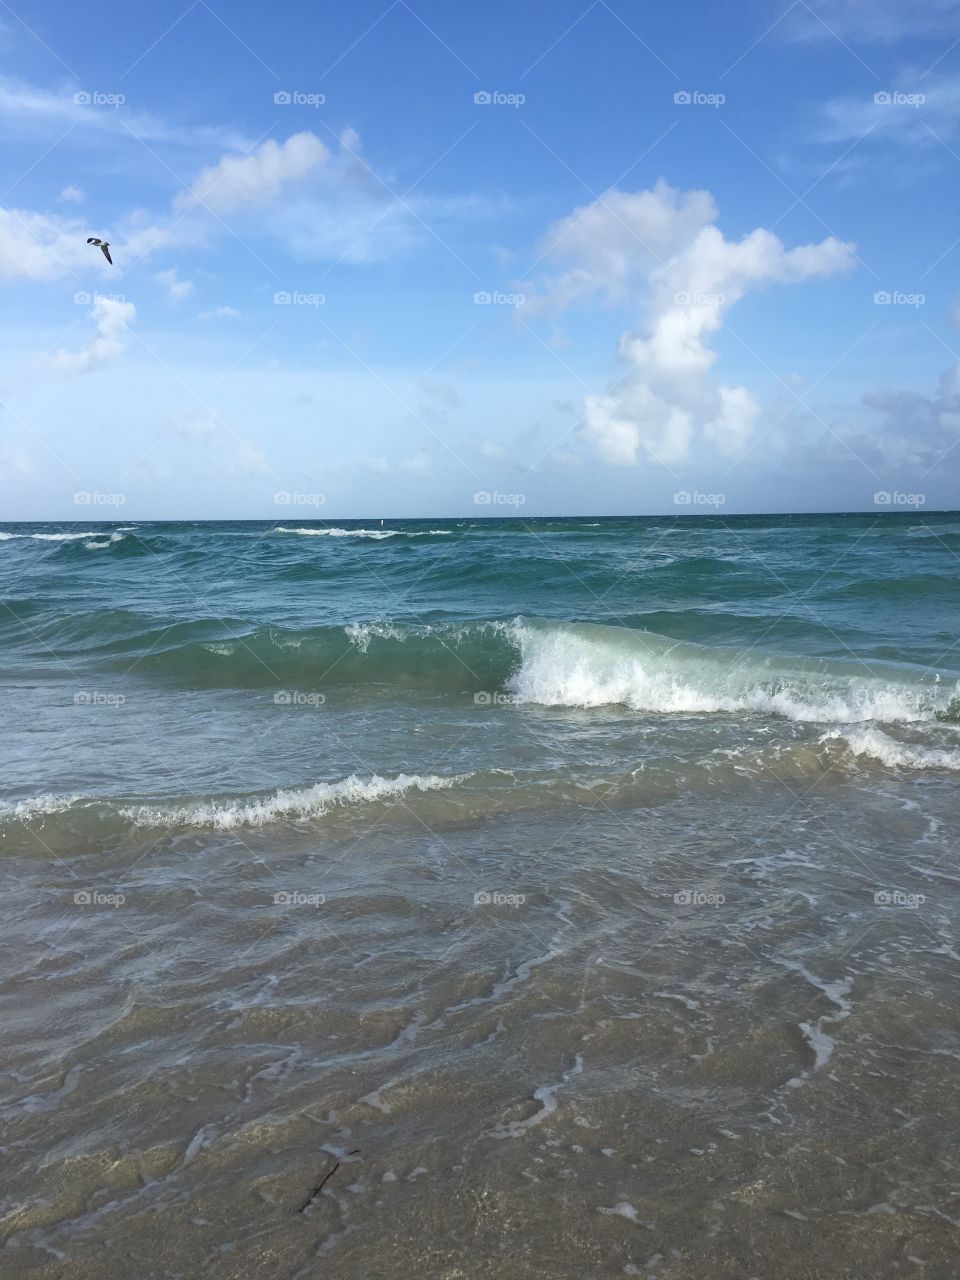 Waves crashing on the shore 